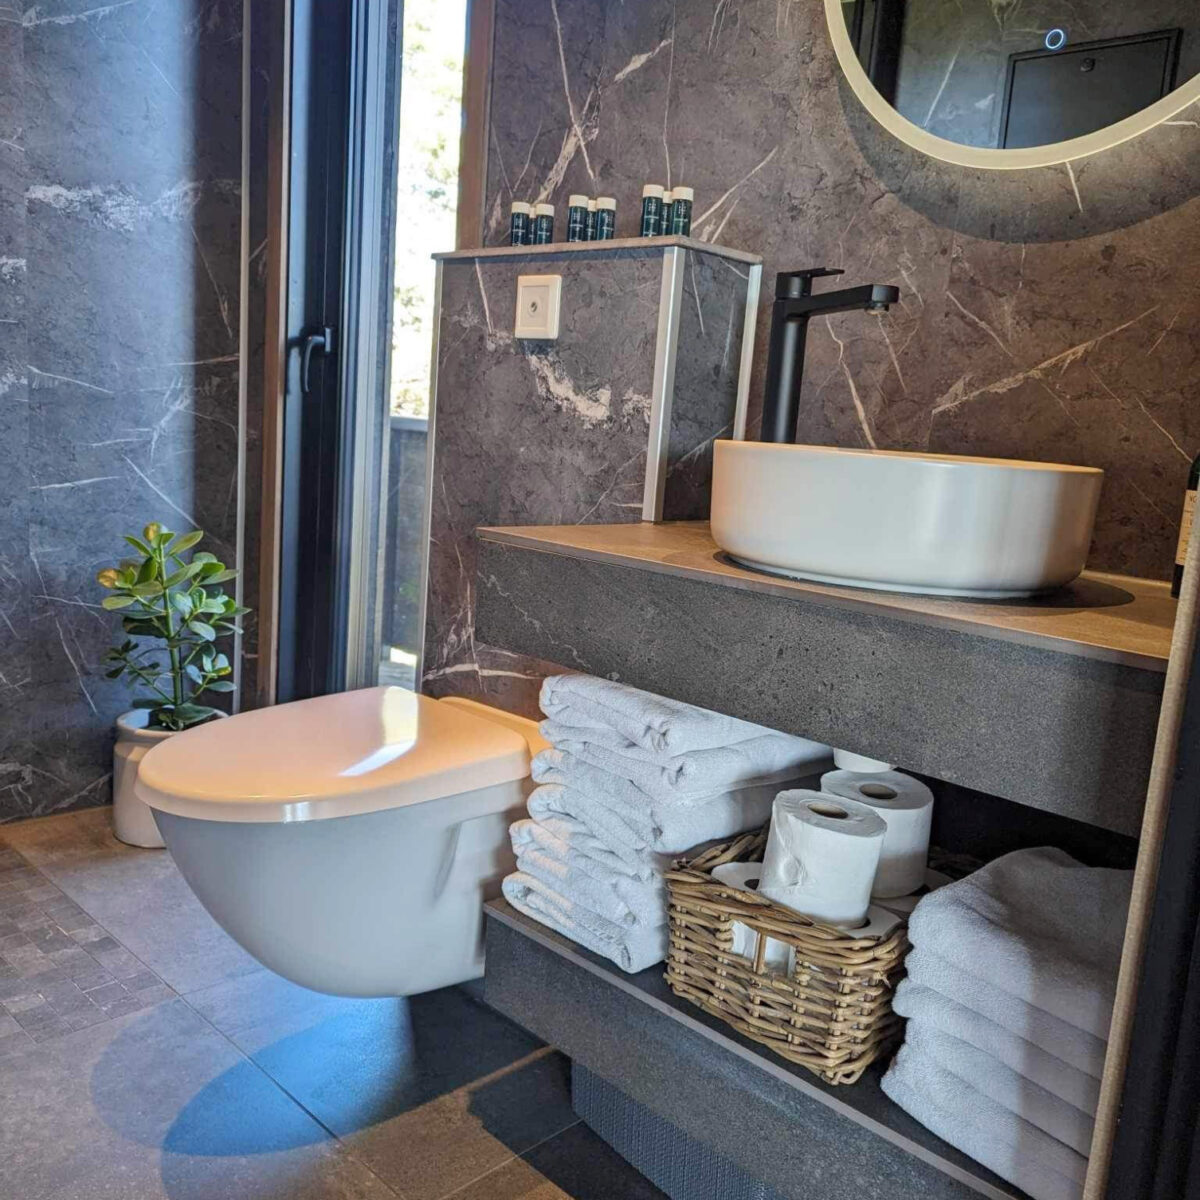 Et moderne baderom med grå marmorerte fliser, stabler med hvite og fint brettede håndduker ligger på benken. Et moderne vegghengt toalett fra Jets.